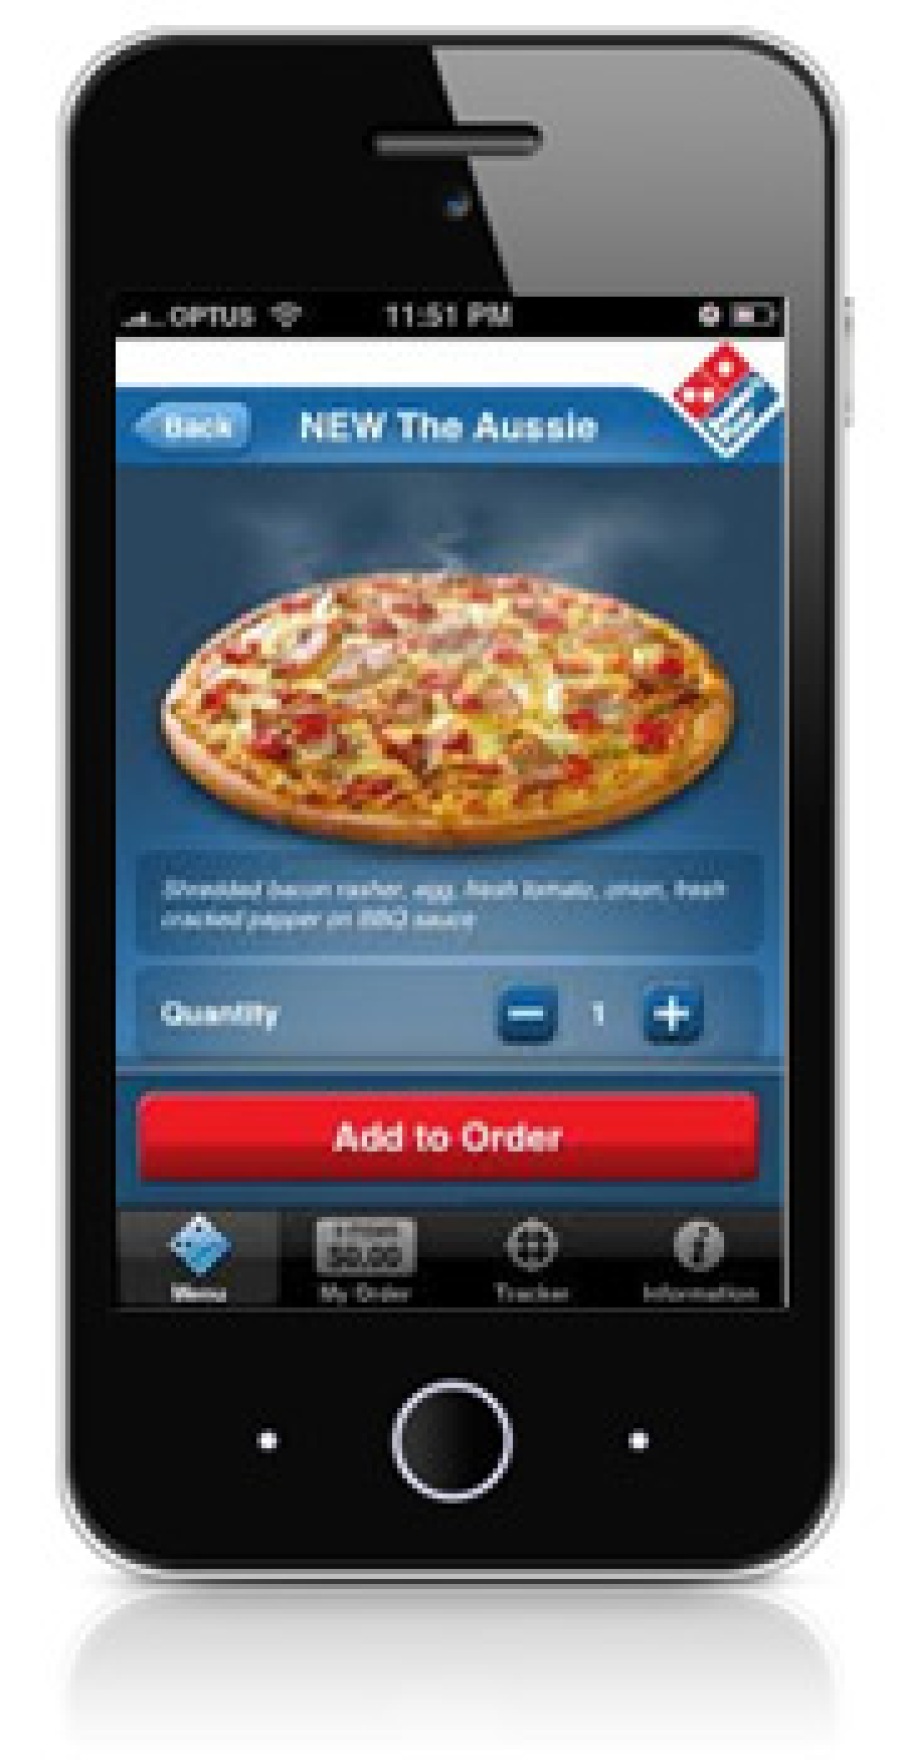 Image de pizza sur un i-phone.jpg